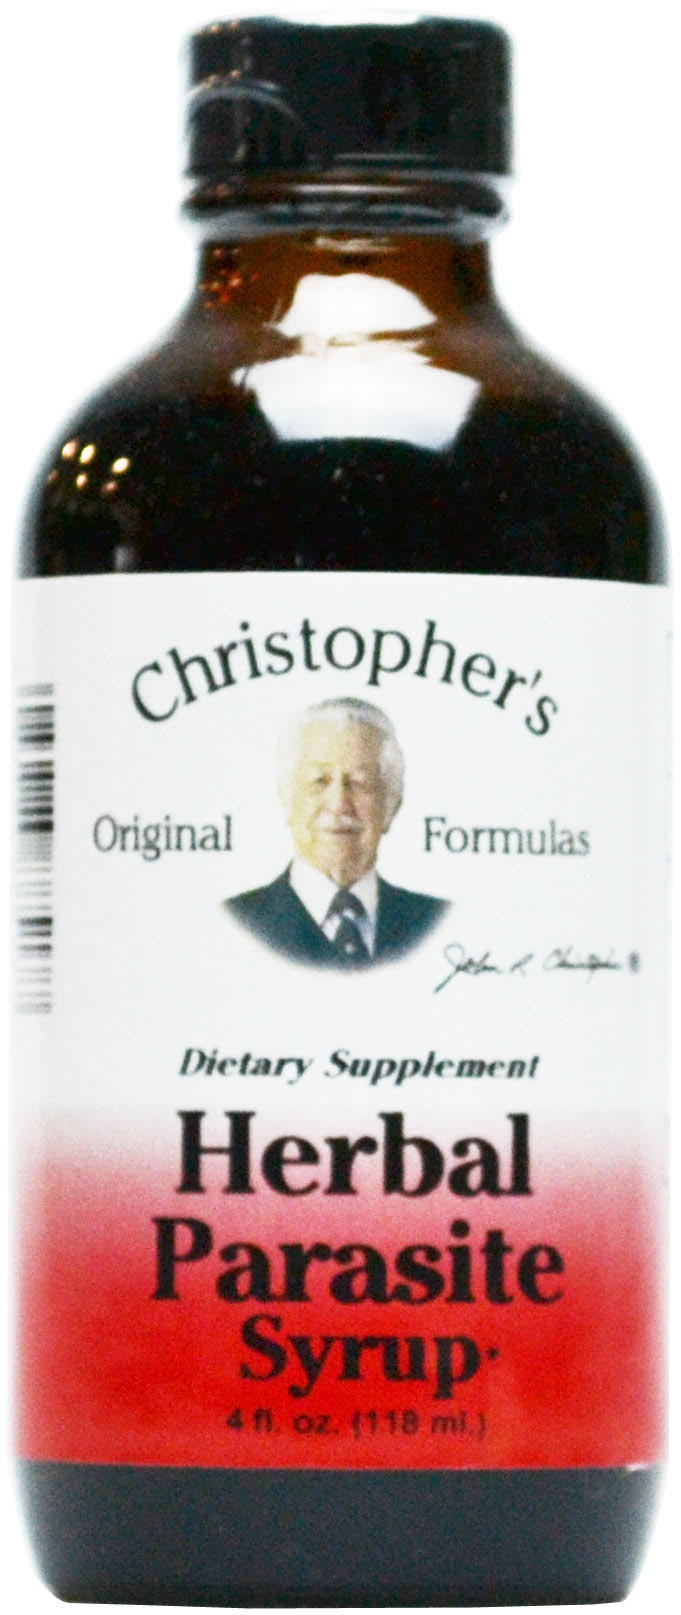 DR. Christopher's Formulas Herbal Parasite Syrup - 4oz